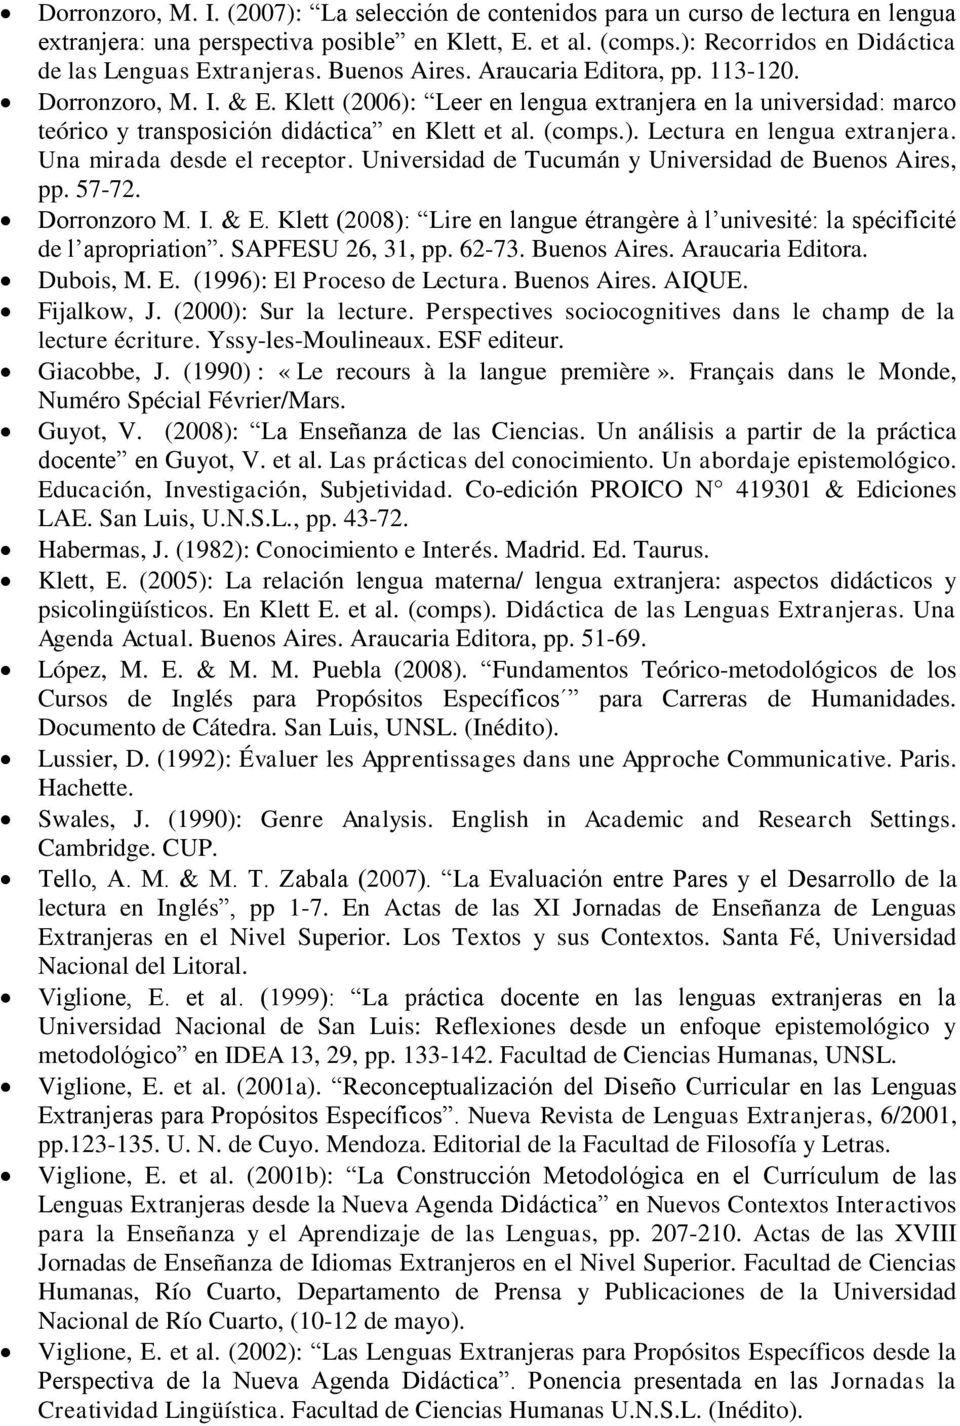 Klett (2006): Leer en lengua extranjera en la universidad: marco teórico y transposición didáctica en Klett et al. (comps.). Lectura en lengua extranjera. Una mirada desde el receptor.